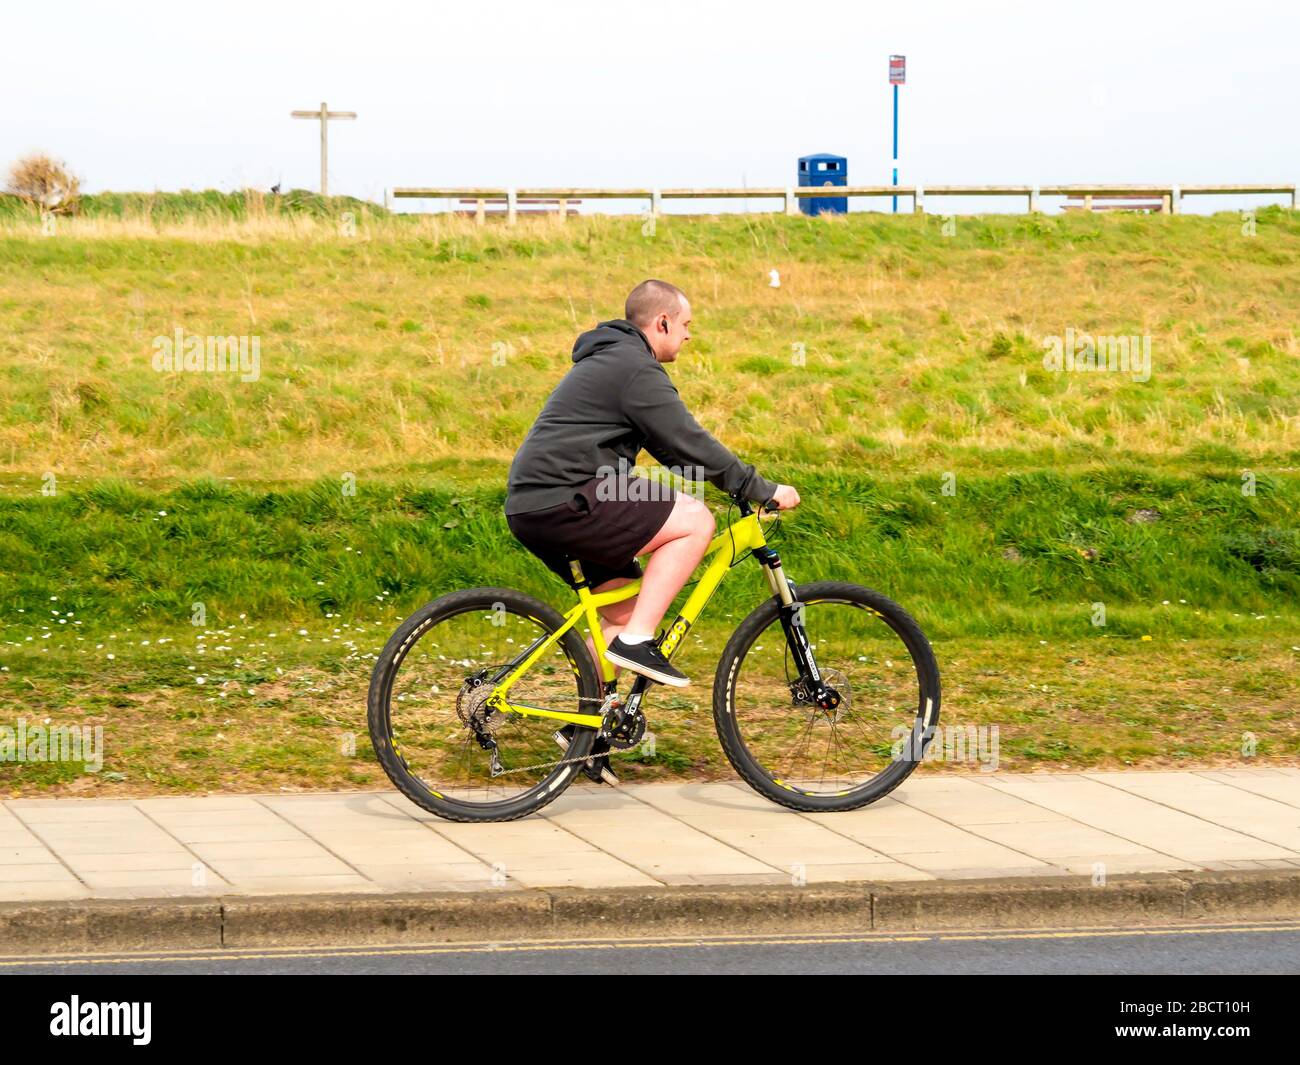 Un joven montando una bicicleta amarilla fuera de carretera en una pista de ciclismo con un banco de hierba detrás de él Foto de stock